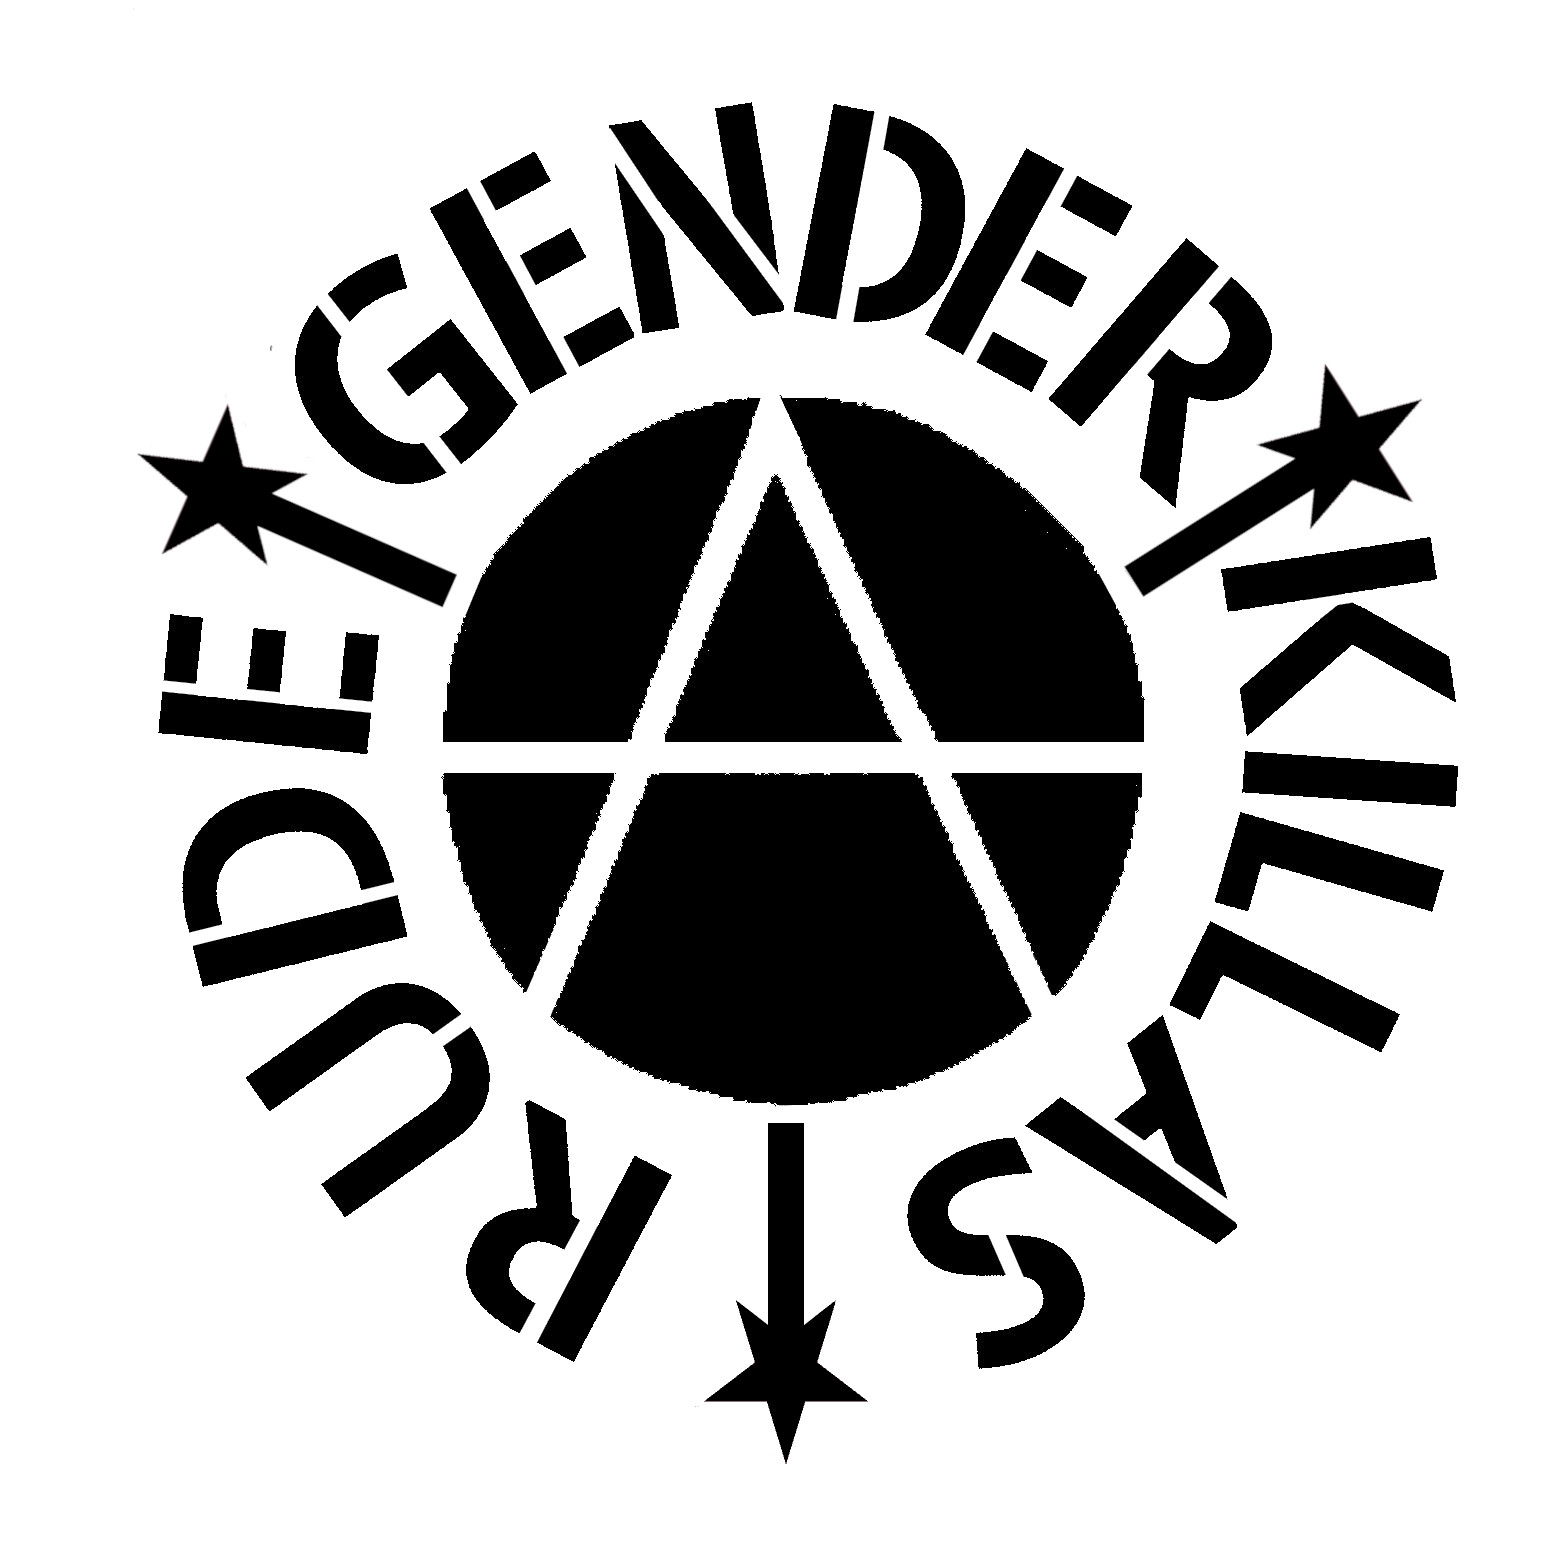 rudegenderkillas logo blackstar